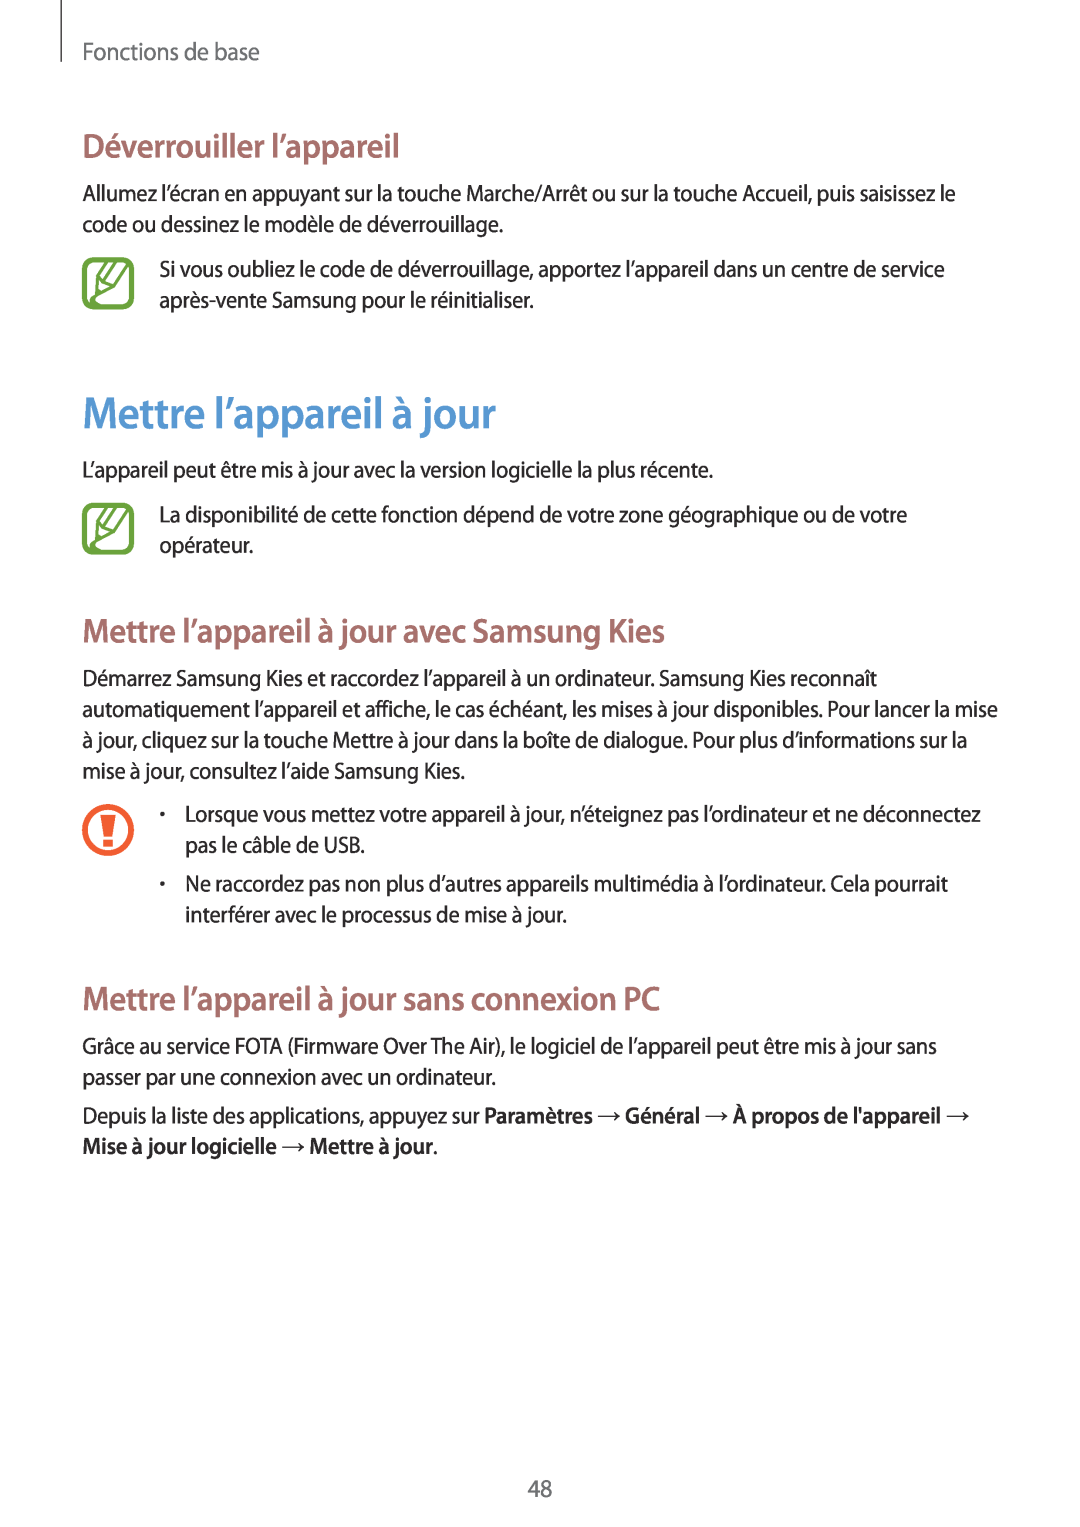 Samsung SM-T320NZKAXEF manual Déverrouiller l’appareil, Mettre l’appareil à jour avec Samsung Kies, Fonctions de base 